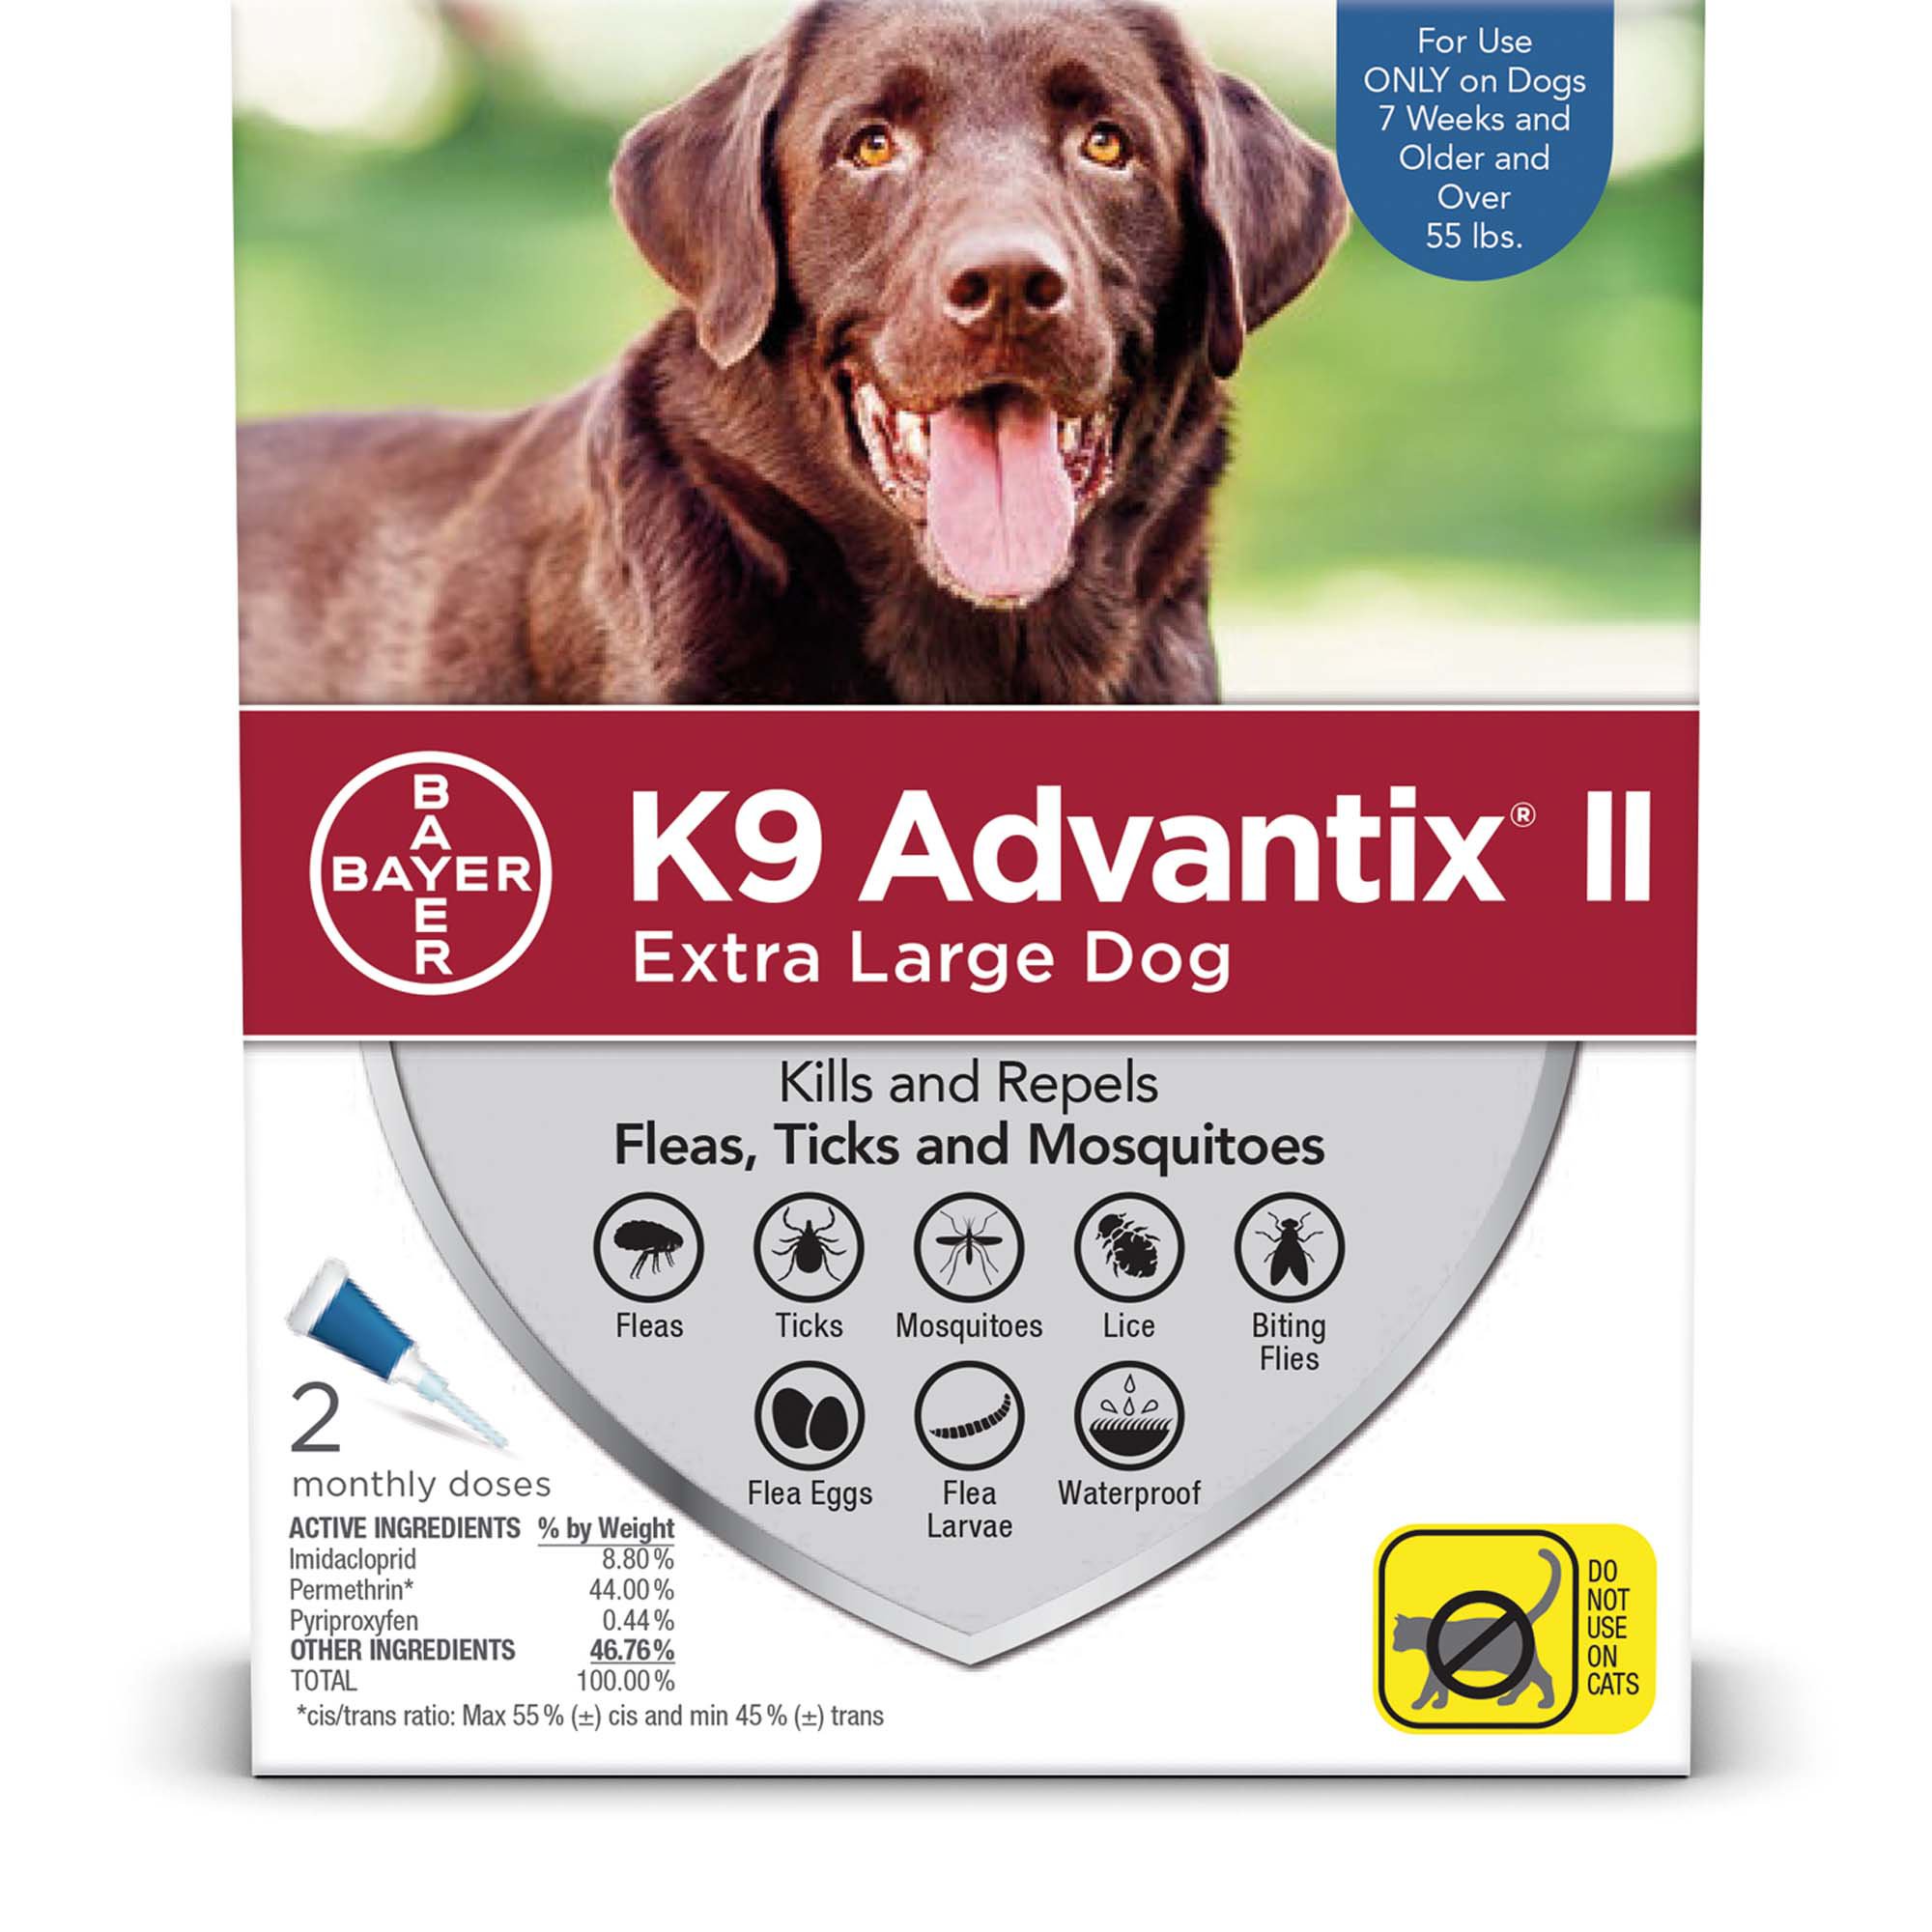 advantix for dogs dosage